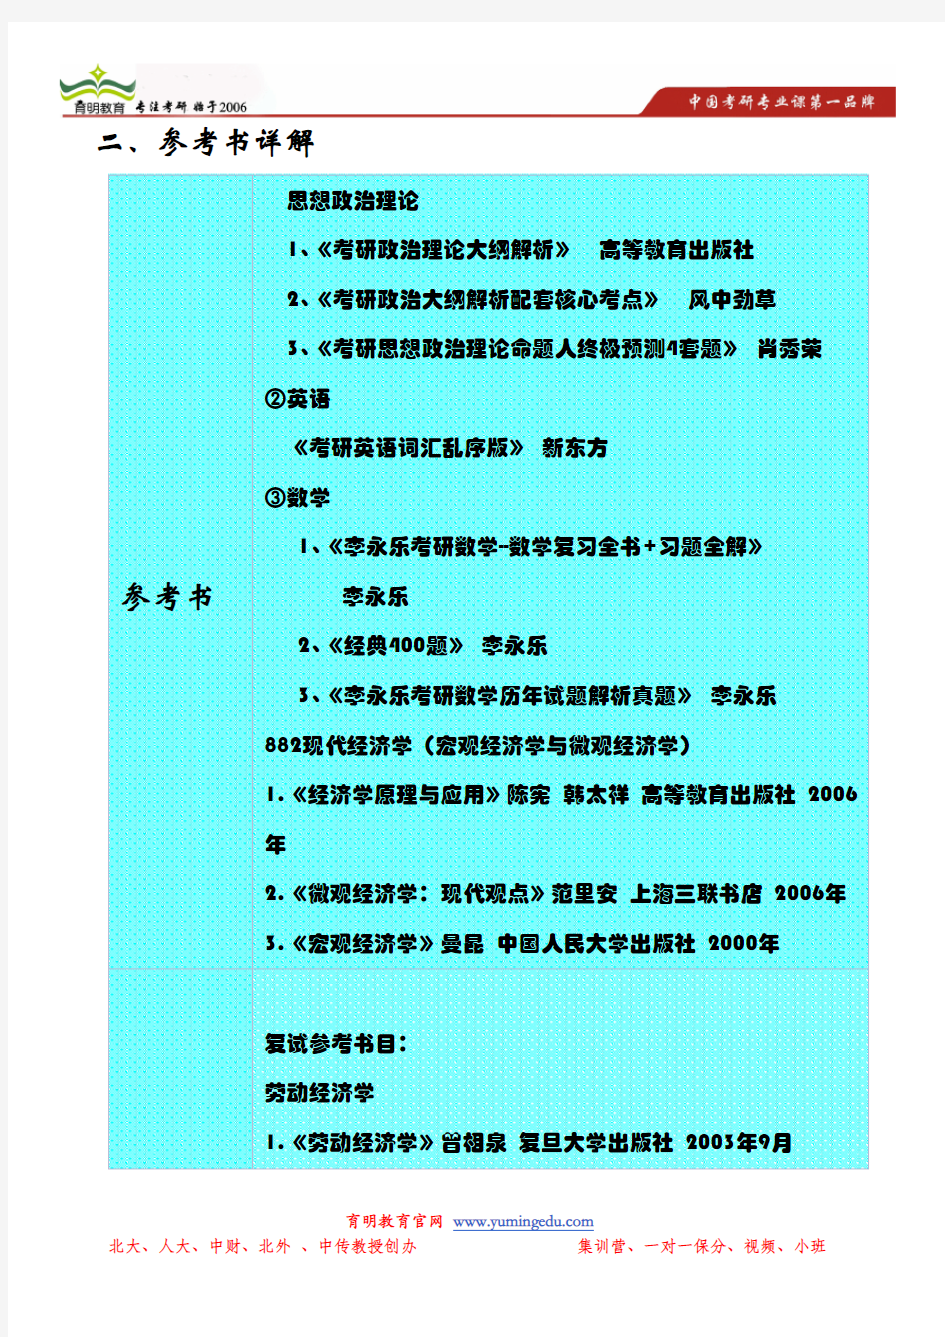 2014年上海大学经济学院劳动经济学招生目录以及参考书详解